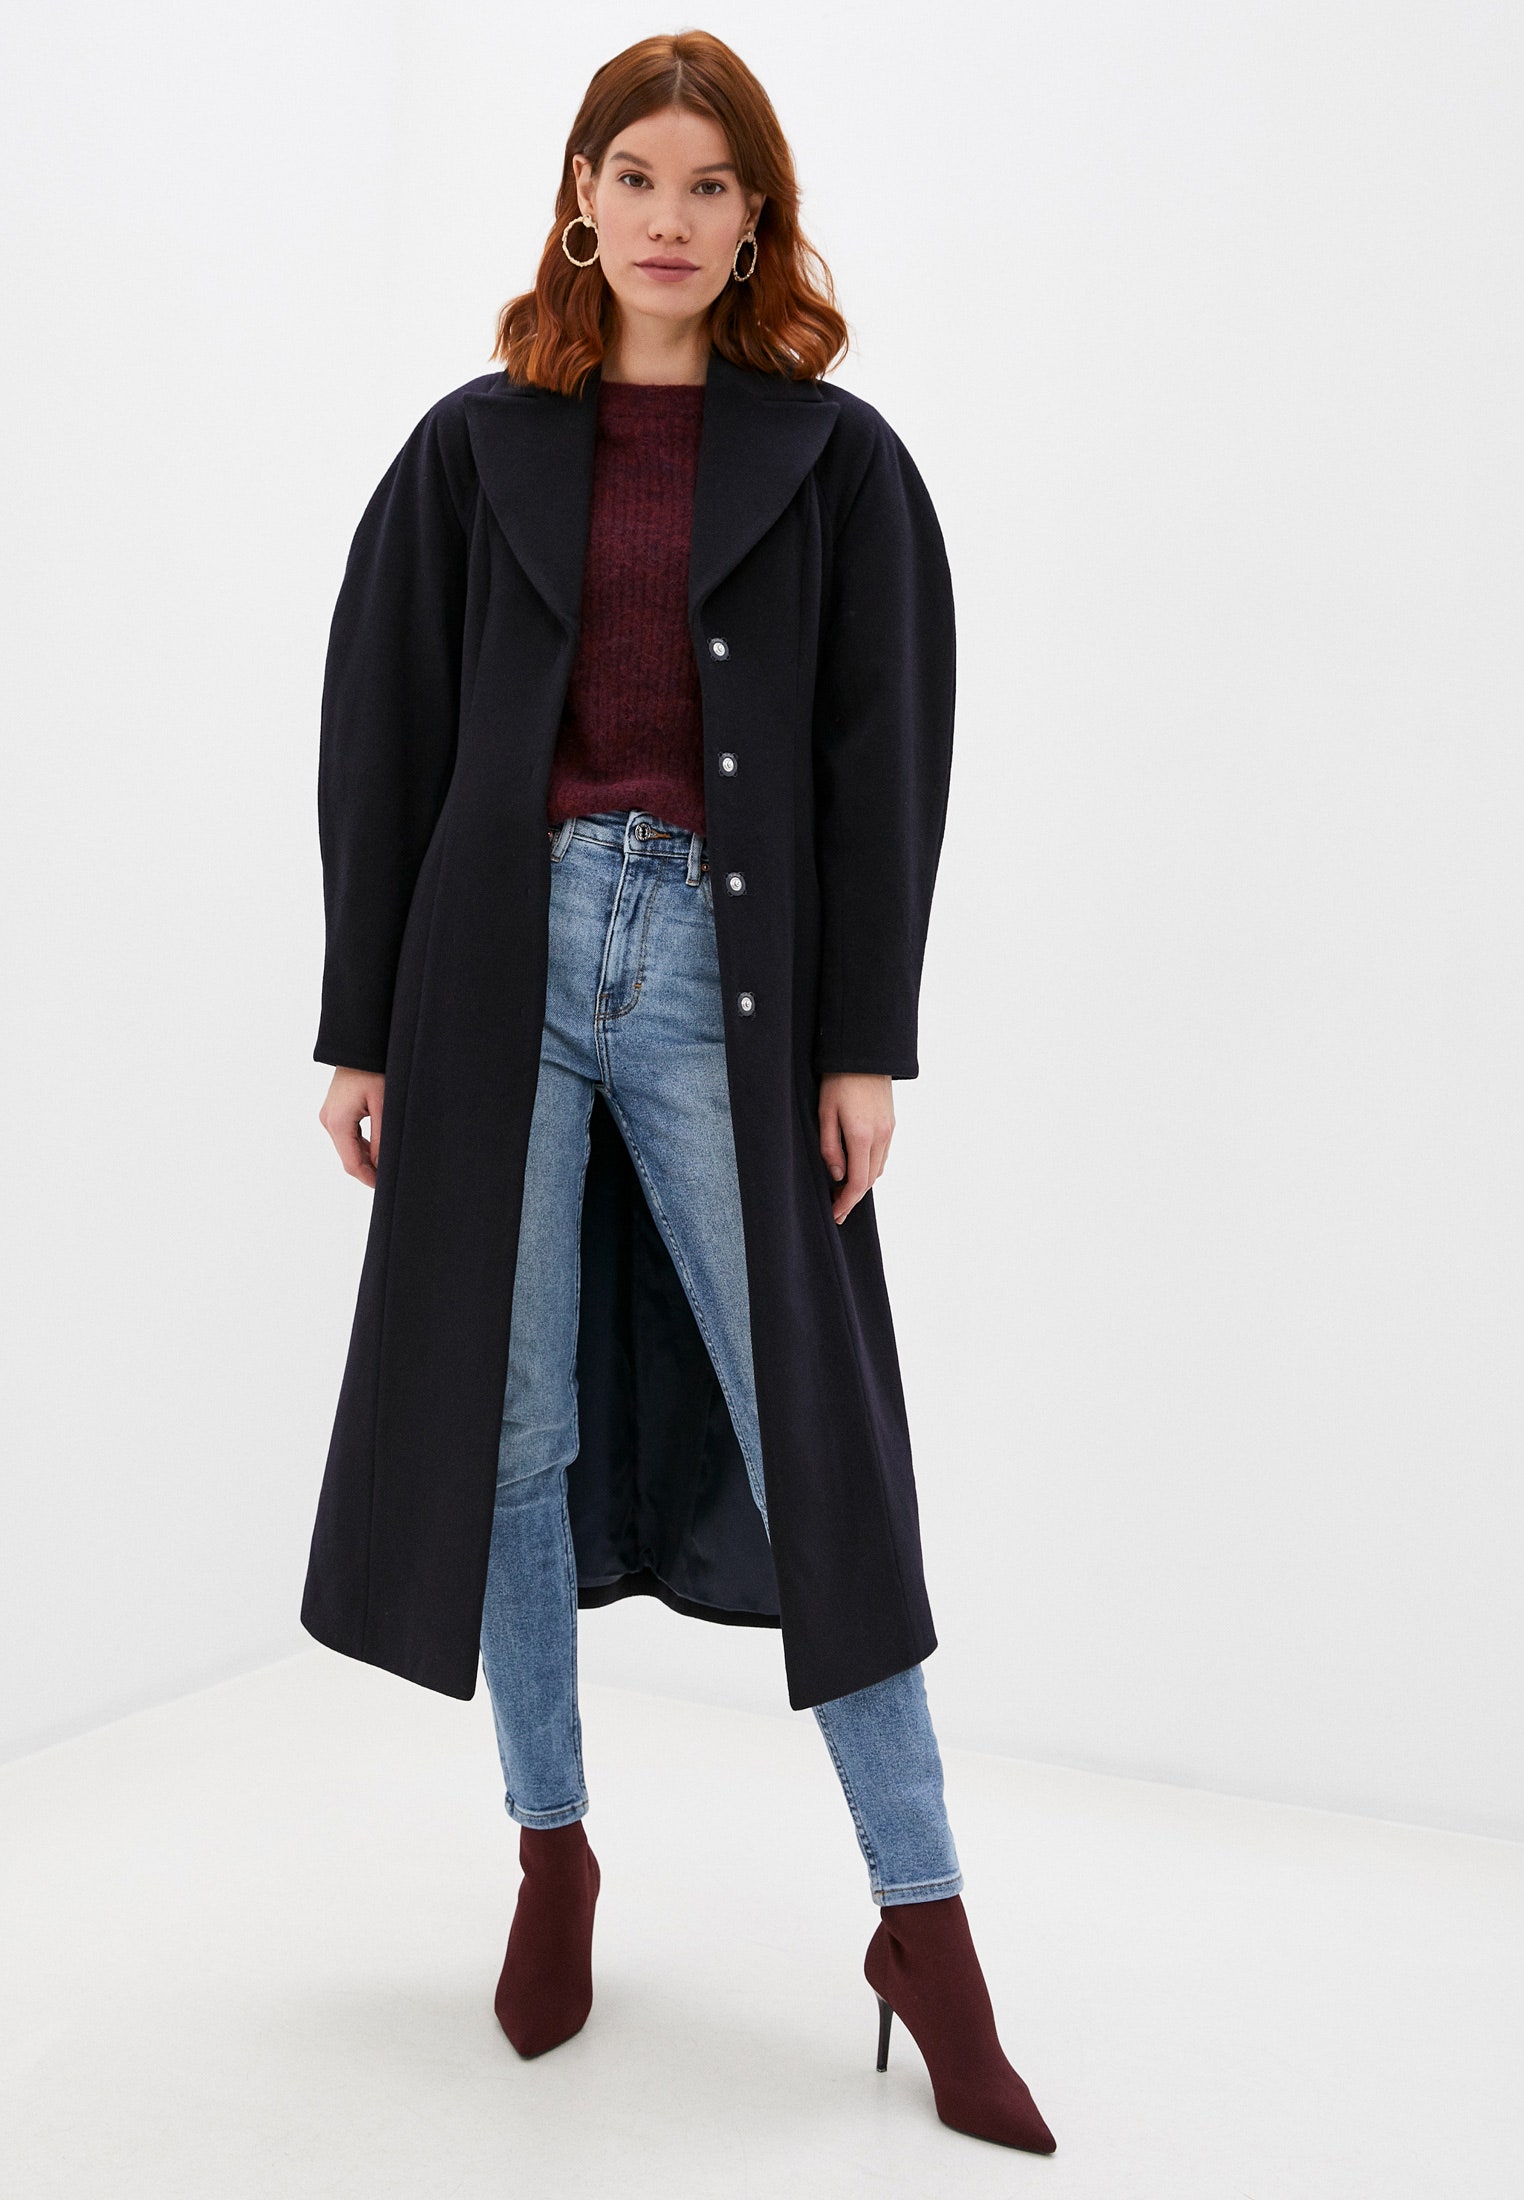 20 модных пальто которые можно купить с большой скидкой